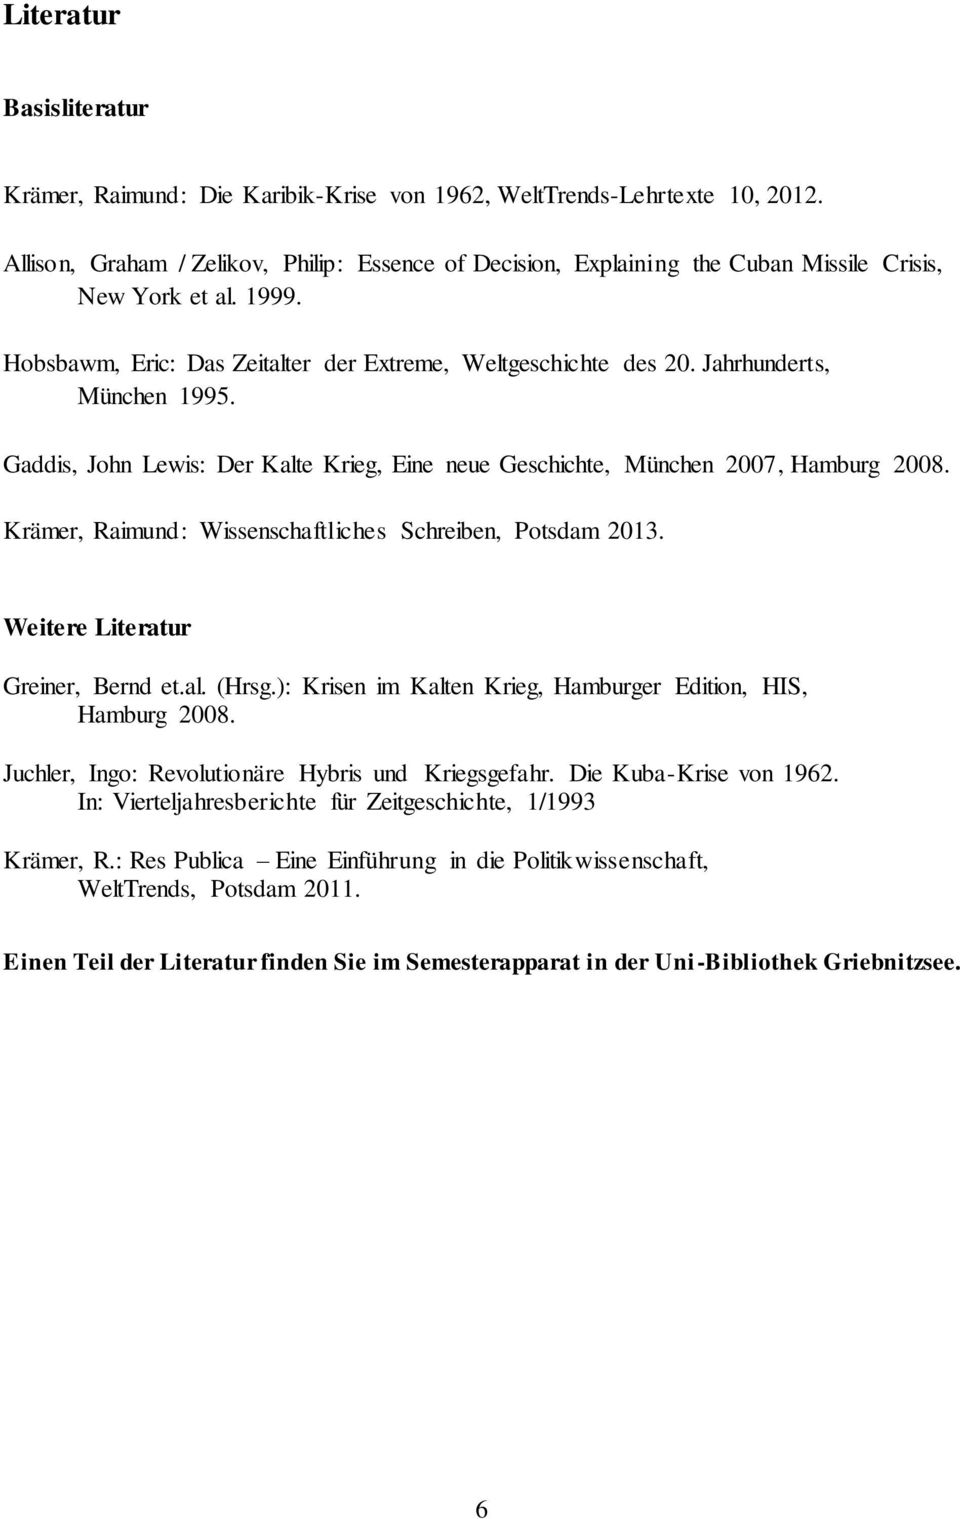 Jahrhunderts, München 1995. Gaddis, John Lewis: Der Kalte Krieg, Eine neue Geschichte, München 2007, Hamburg 2008. Krämer, Raimund: Wissenschaftliches Schreiben, Potsdam 2013.